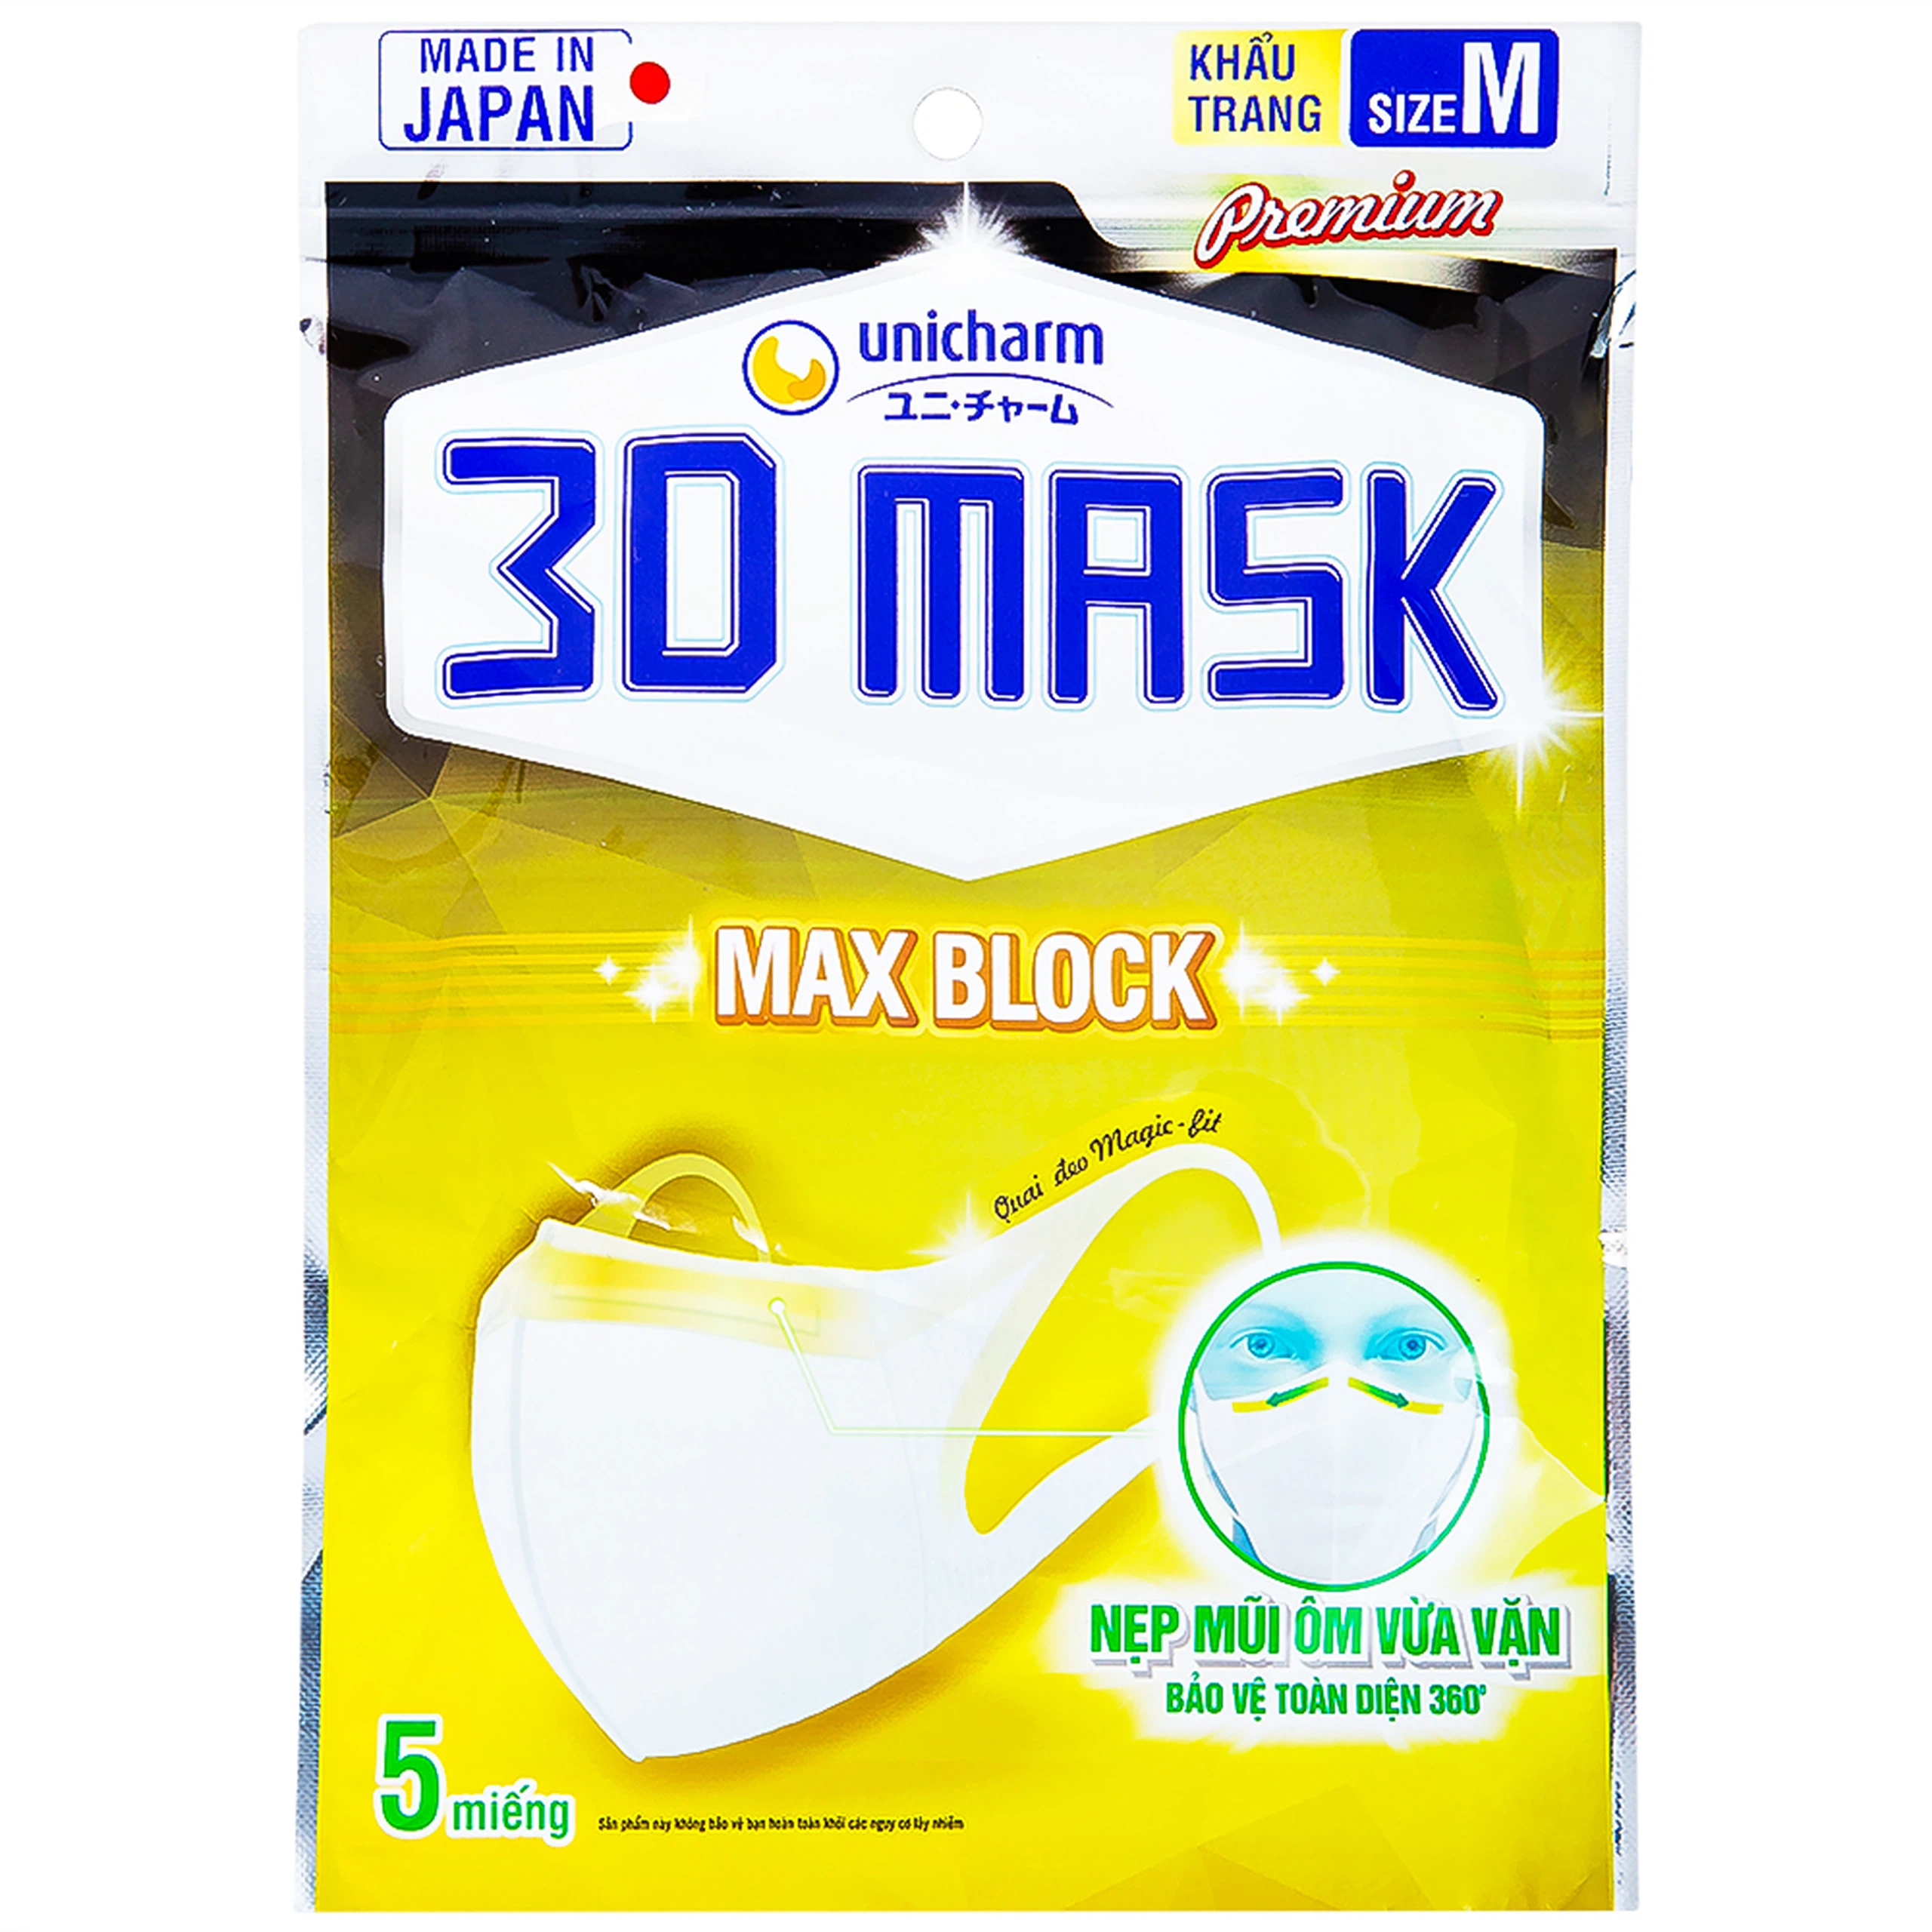 Khẩu trang y tế 3D Mask Max Block Unicharm size M hỗ trợ ngăn khói, bụi, kháng khuẩn (5 cái)